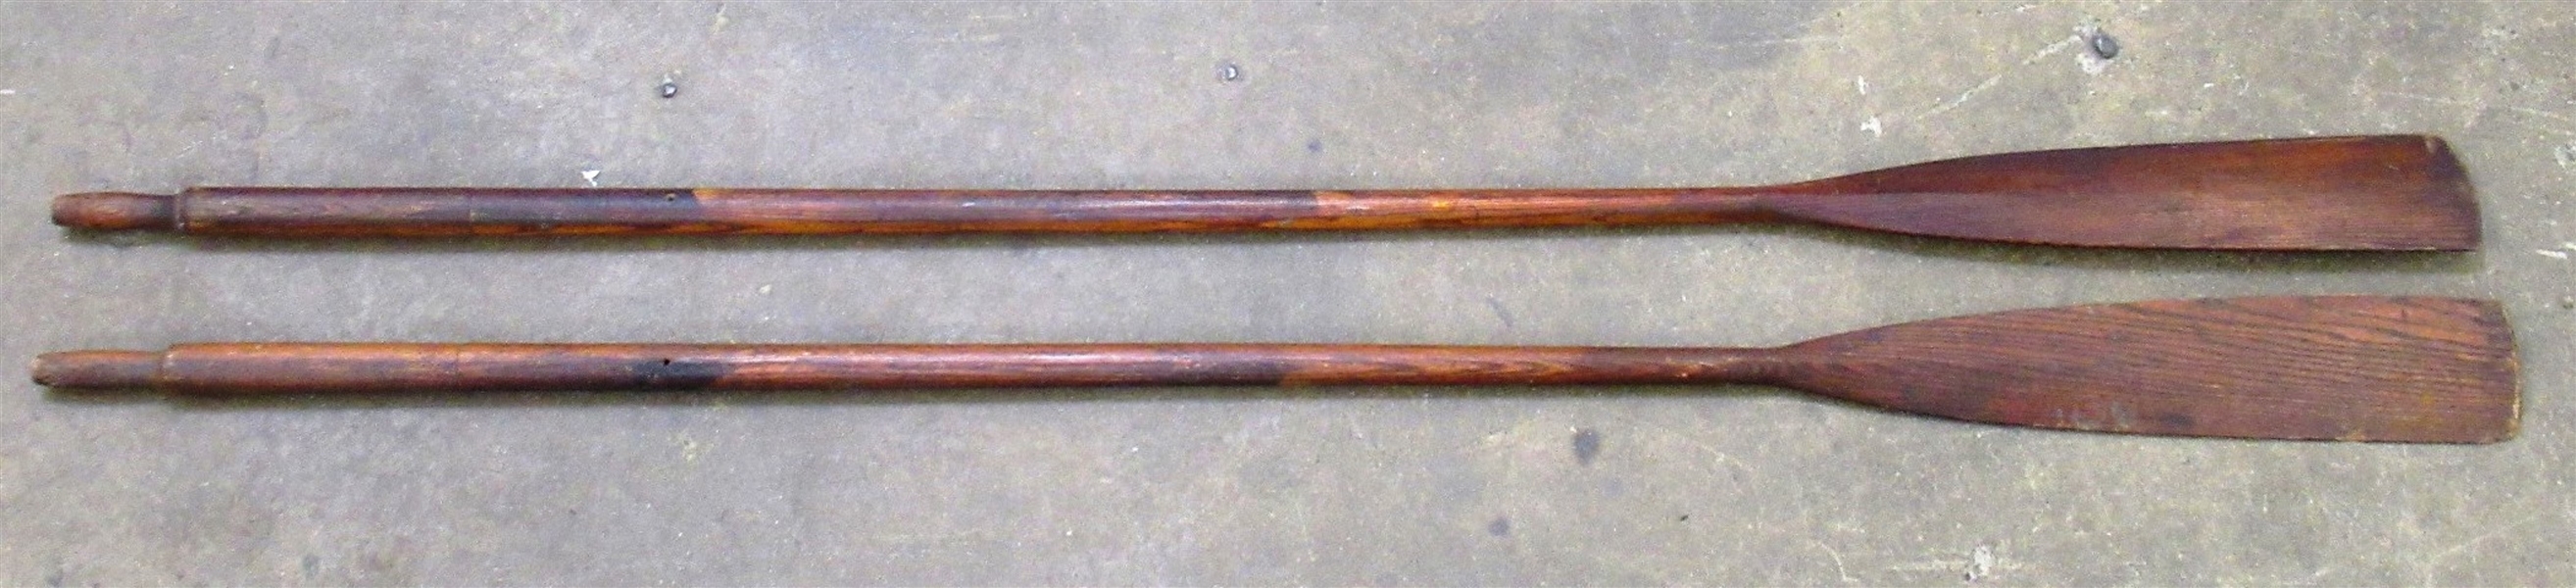 Pair of Vintage Wooden Rowing Oars